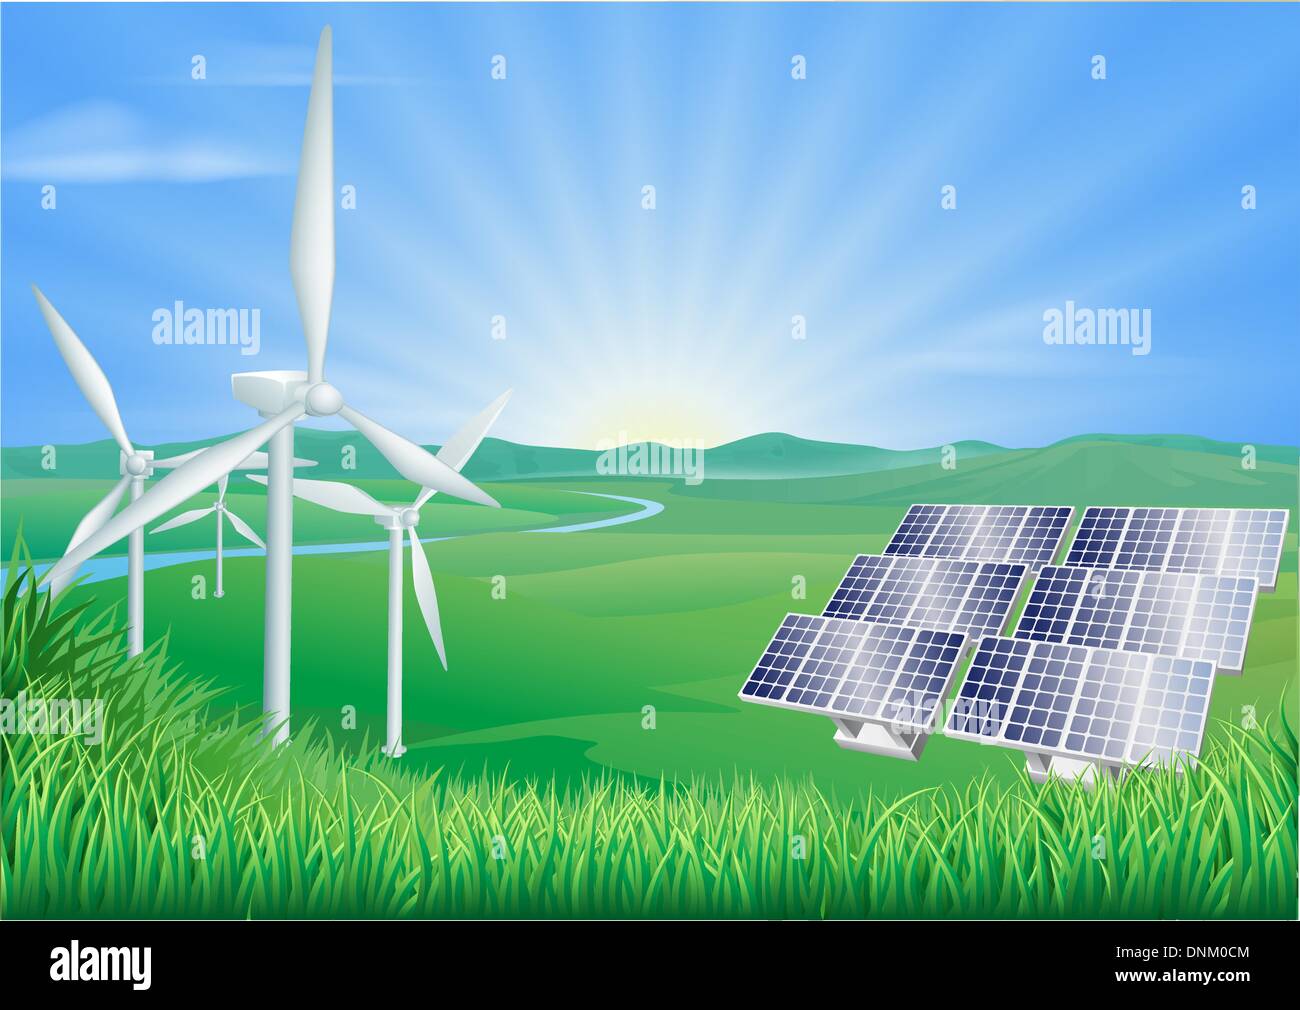 Photovoltaik-Zelle von Solarpanel, Sonnenbatterie dünne Linie Symbol.  Vector PV-Modul erzeugt Gleichstrom durch Sonnenlicht, reinen Strom. So  Stock-Vektorgrafik - Alamy